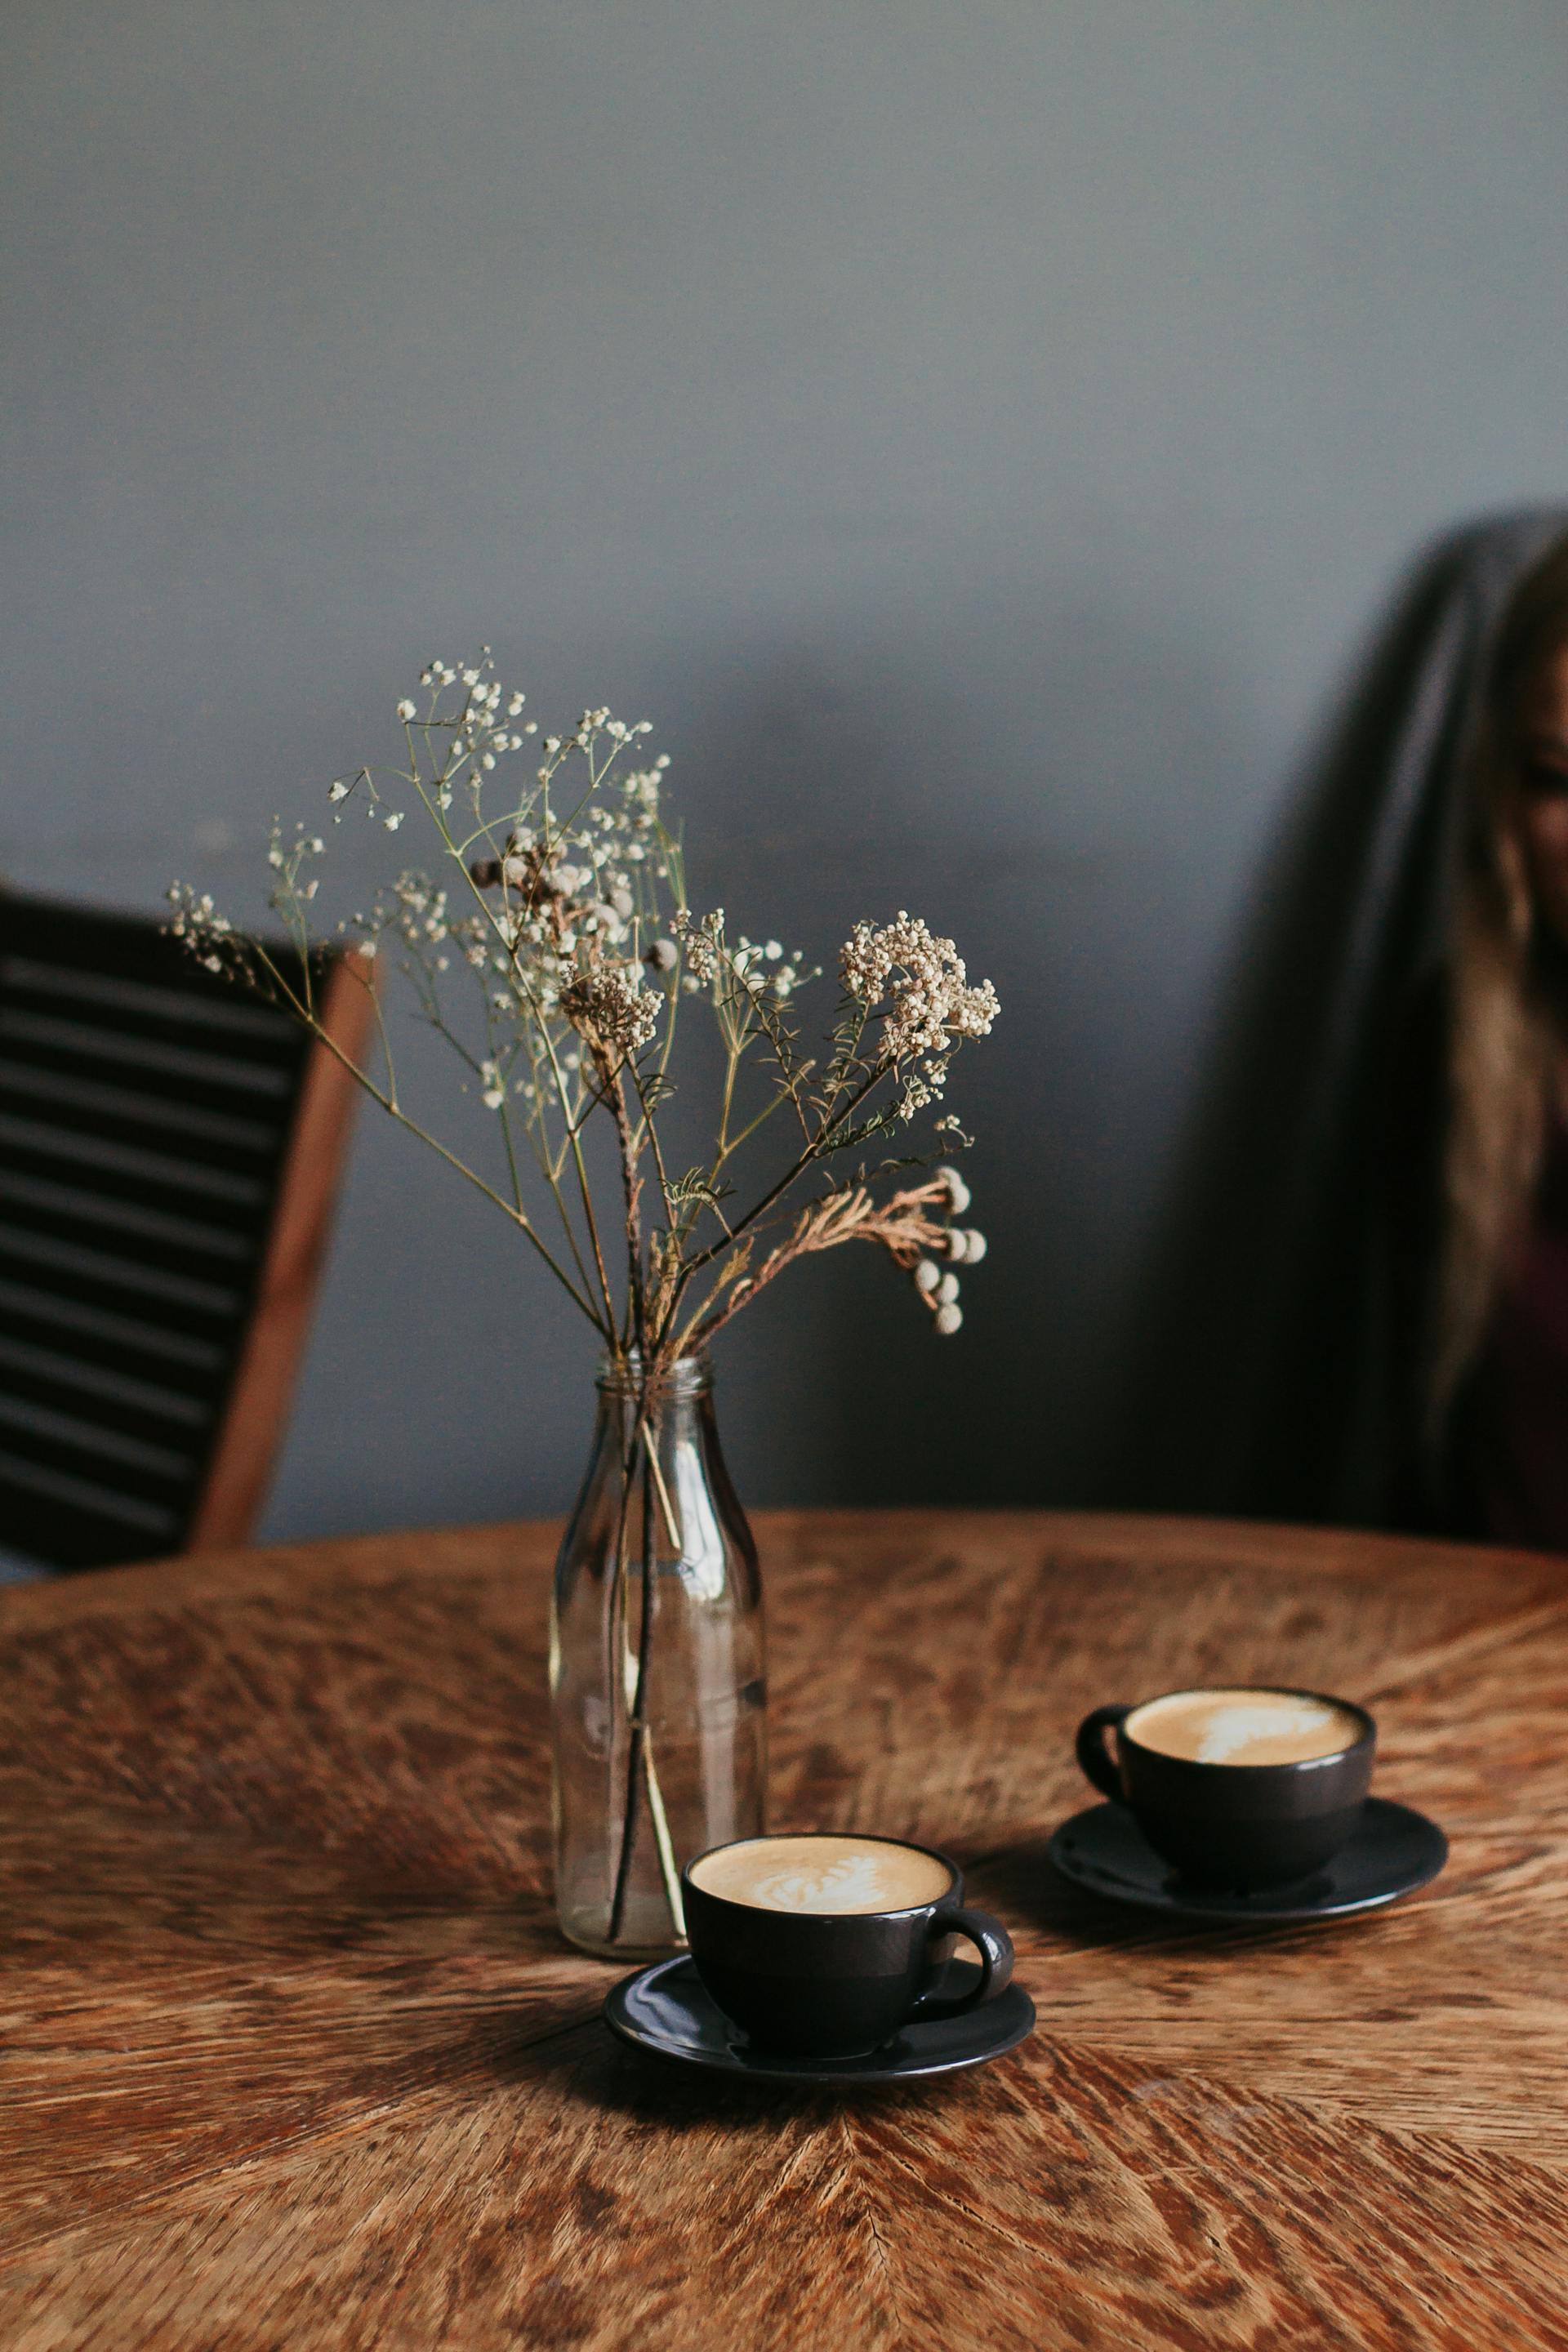 Zwei Tassen Kaffee neben einer Blumenvase auf einem Tisch | Quelle: Pexels